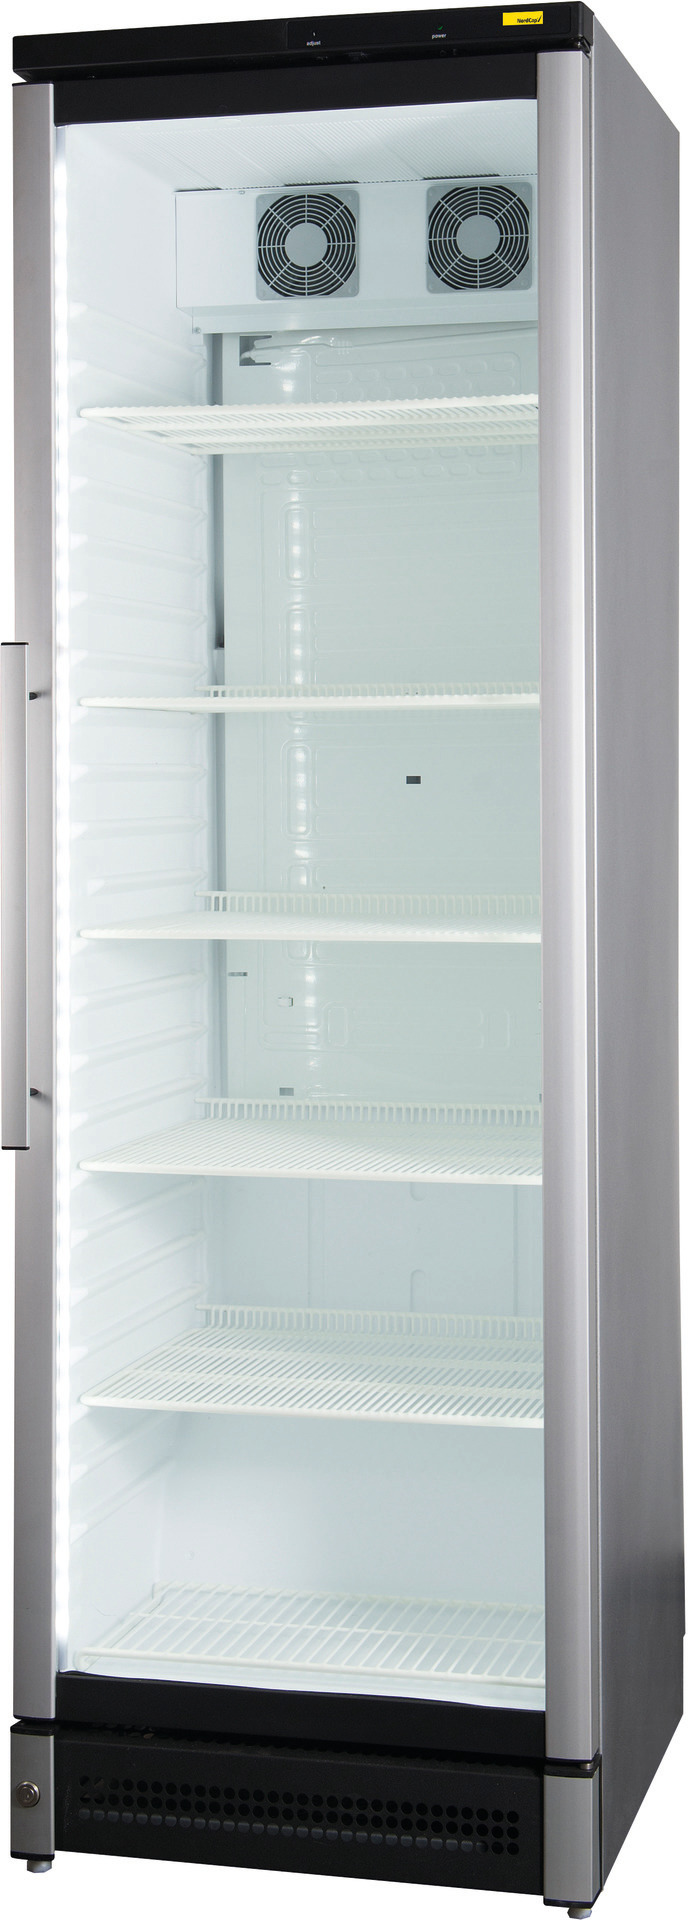 Umluft-Glastürtiefkühlschrank 310,00 l  / einbaufähig / steckerfertig